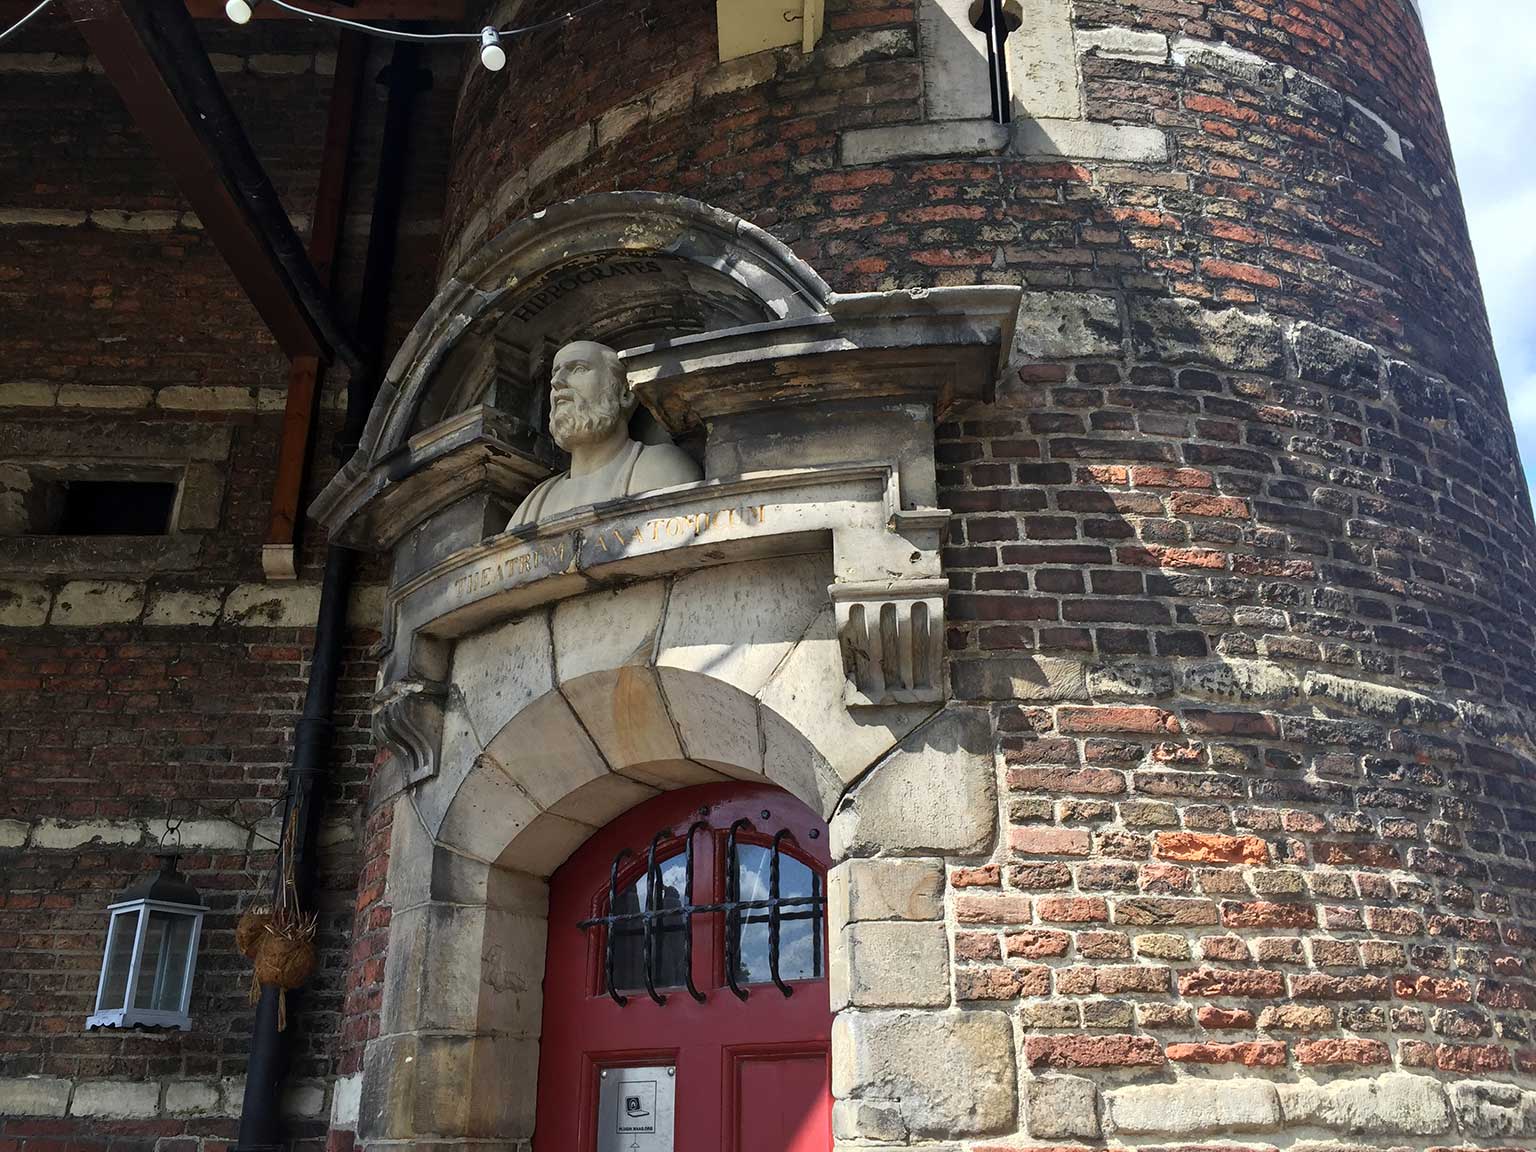 Ingang van het Theatrum Anatomicum tower in de Waag, Nieuwmarkt, Amsterdam